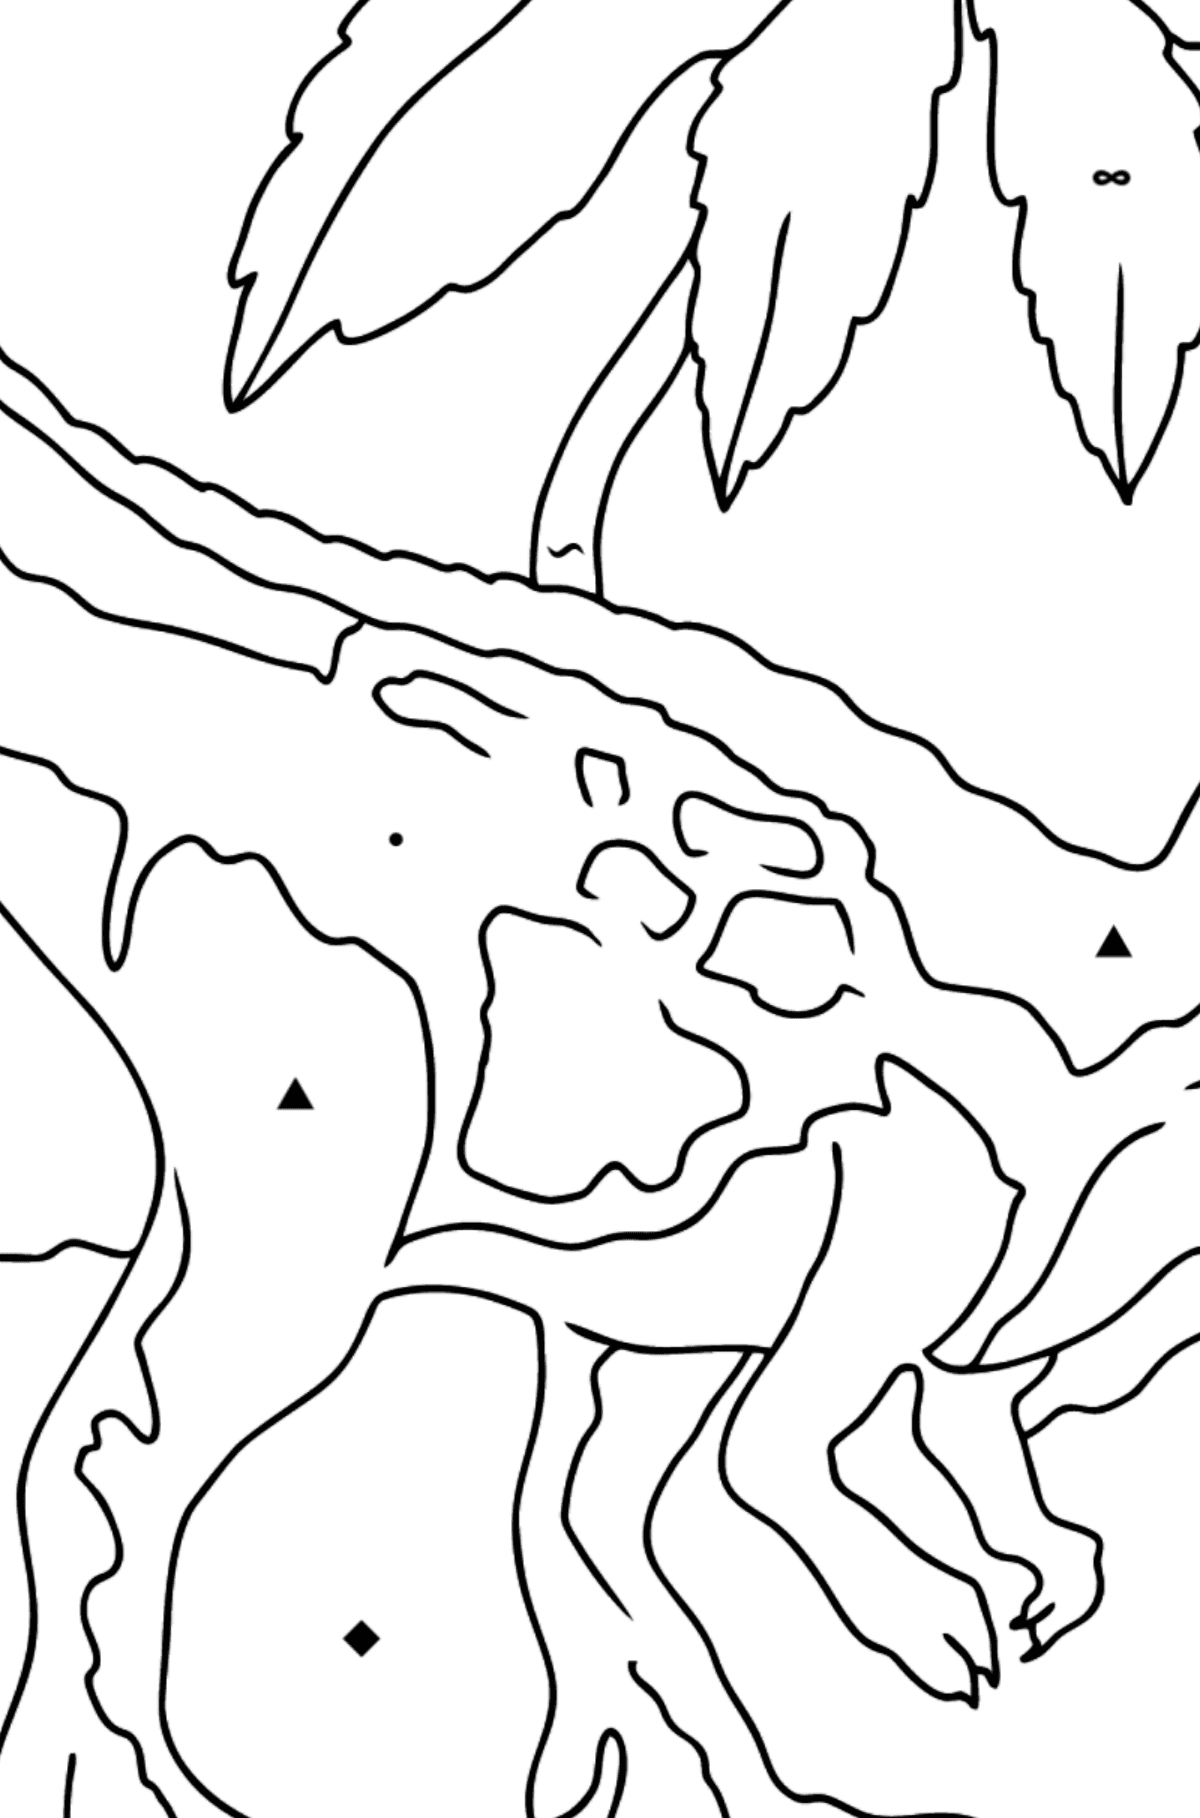 Målarbild tyrannosaurus rovdjur (lätt) - Färgläggning efter symboler För barn